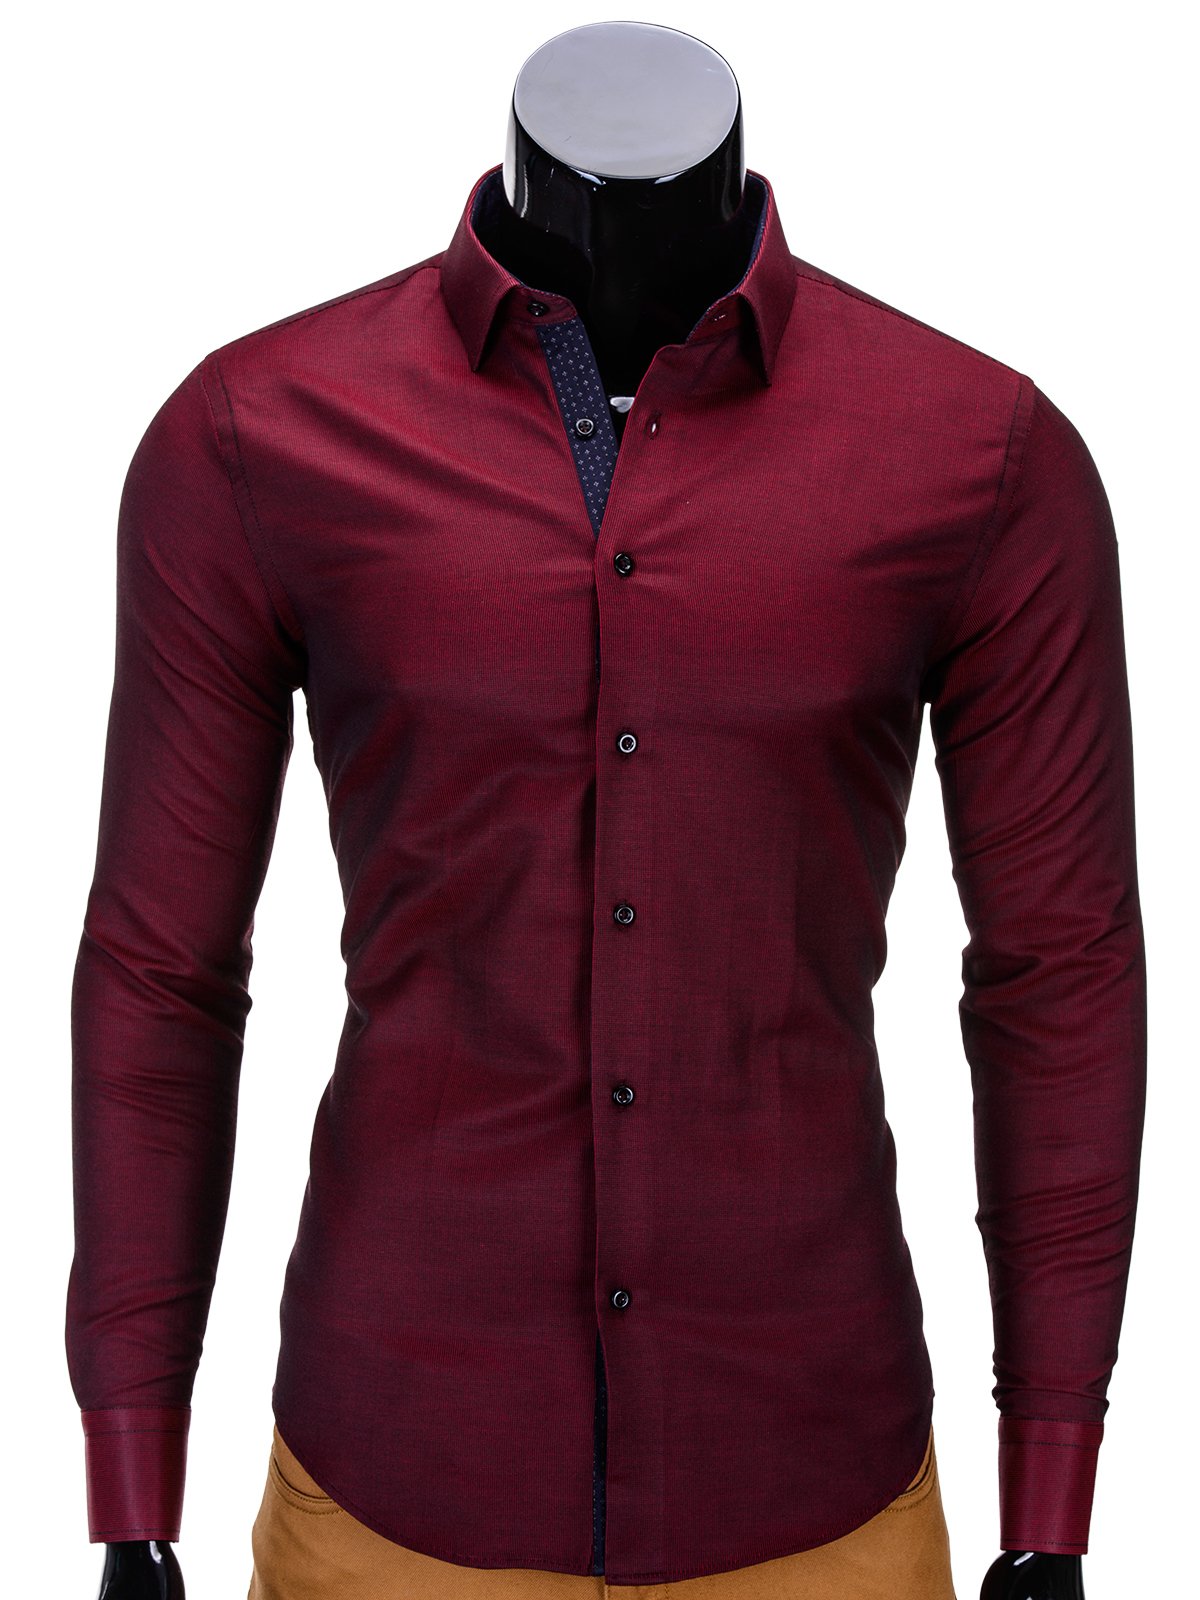 Men's shirt K329 - burgundy | MODONE wholesale - Clothing For Men